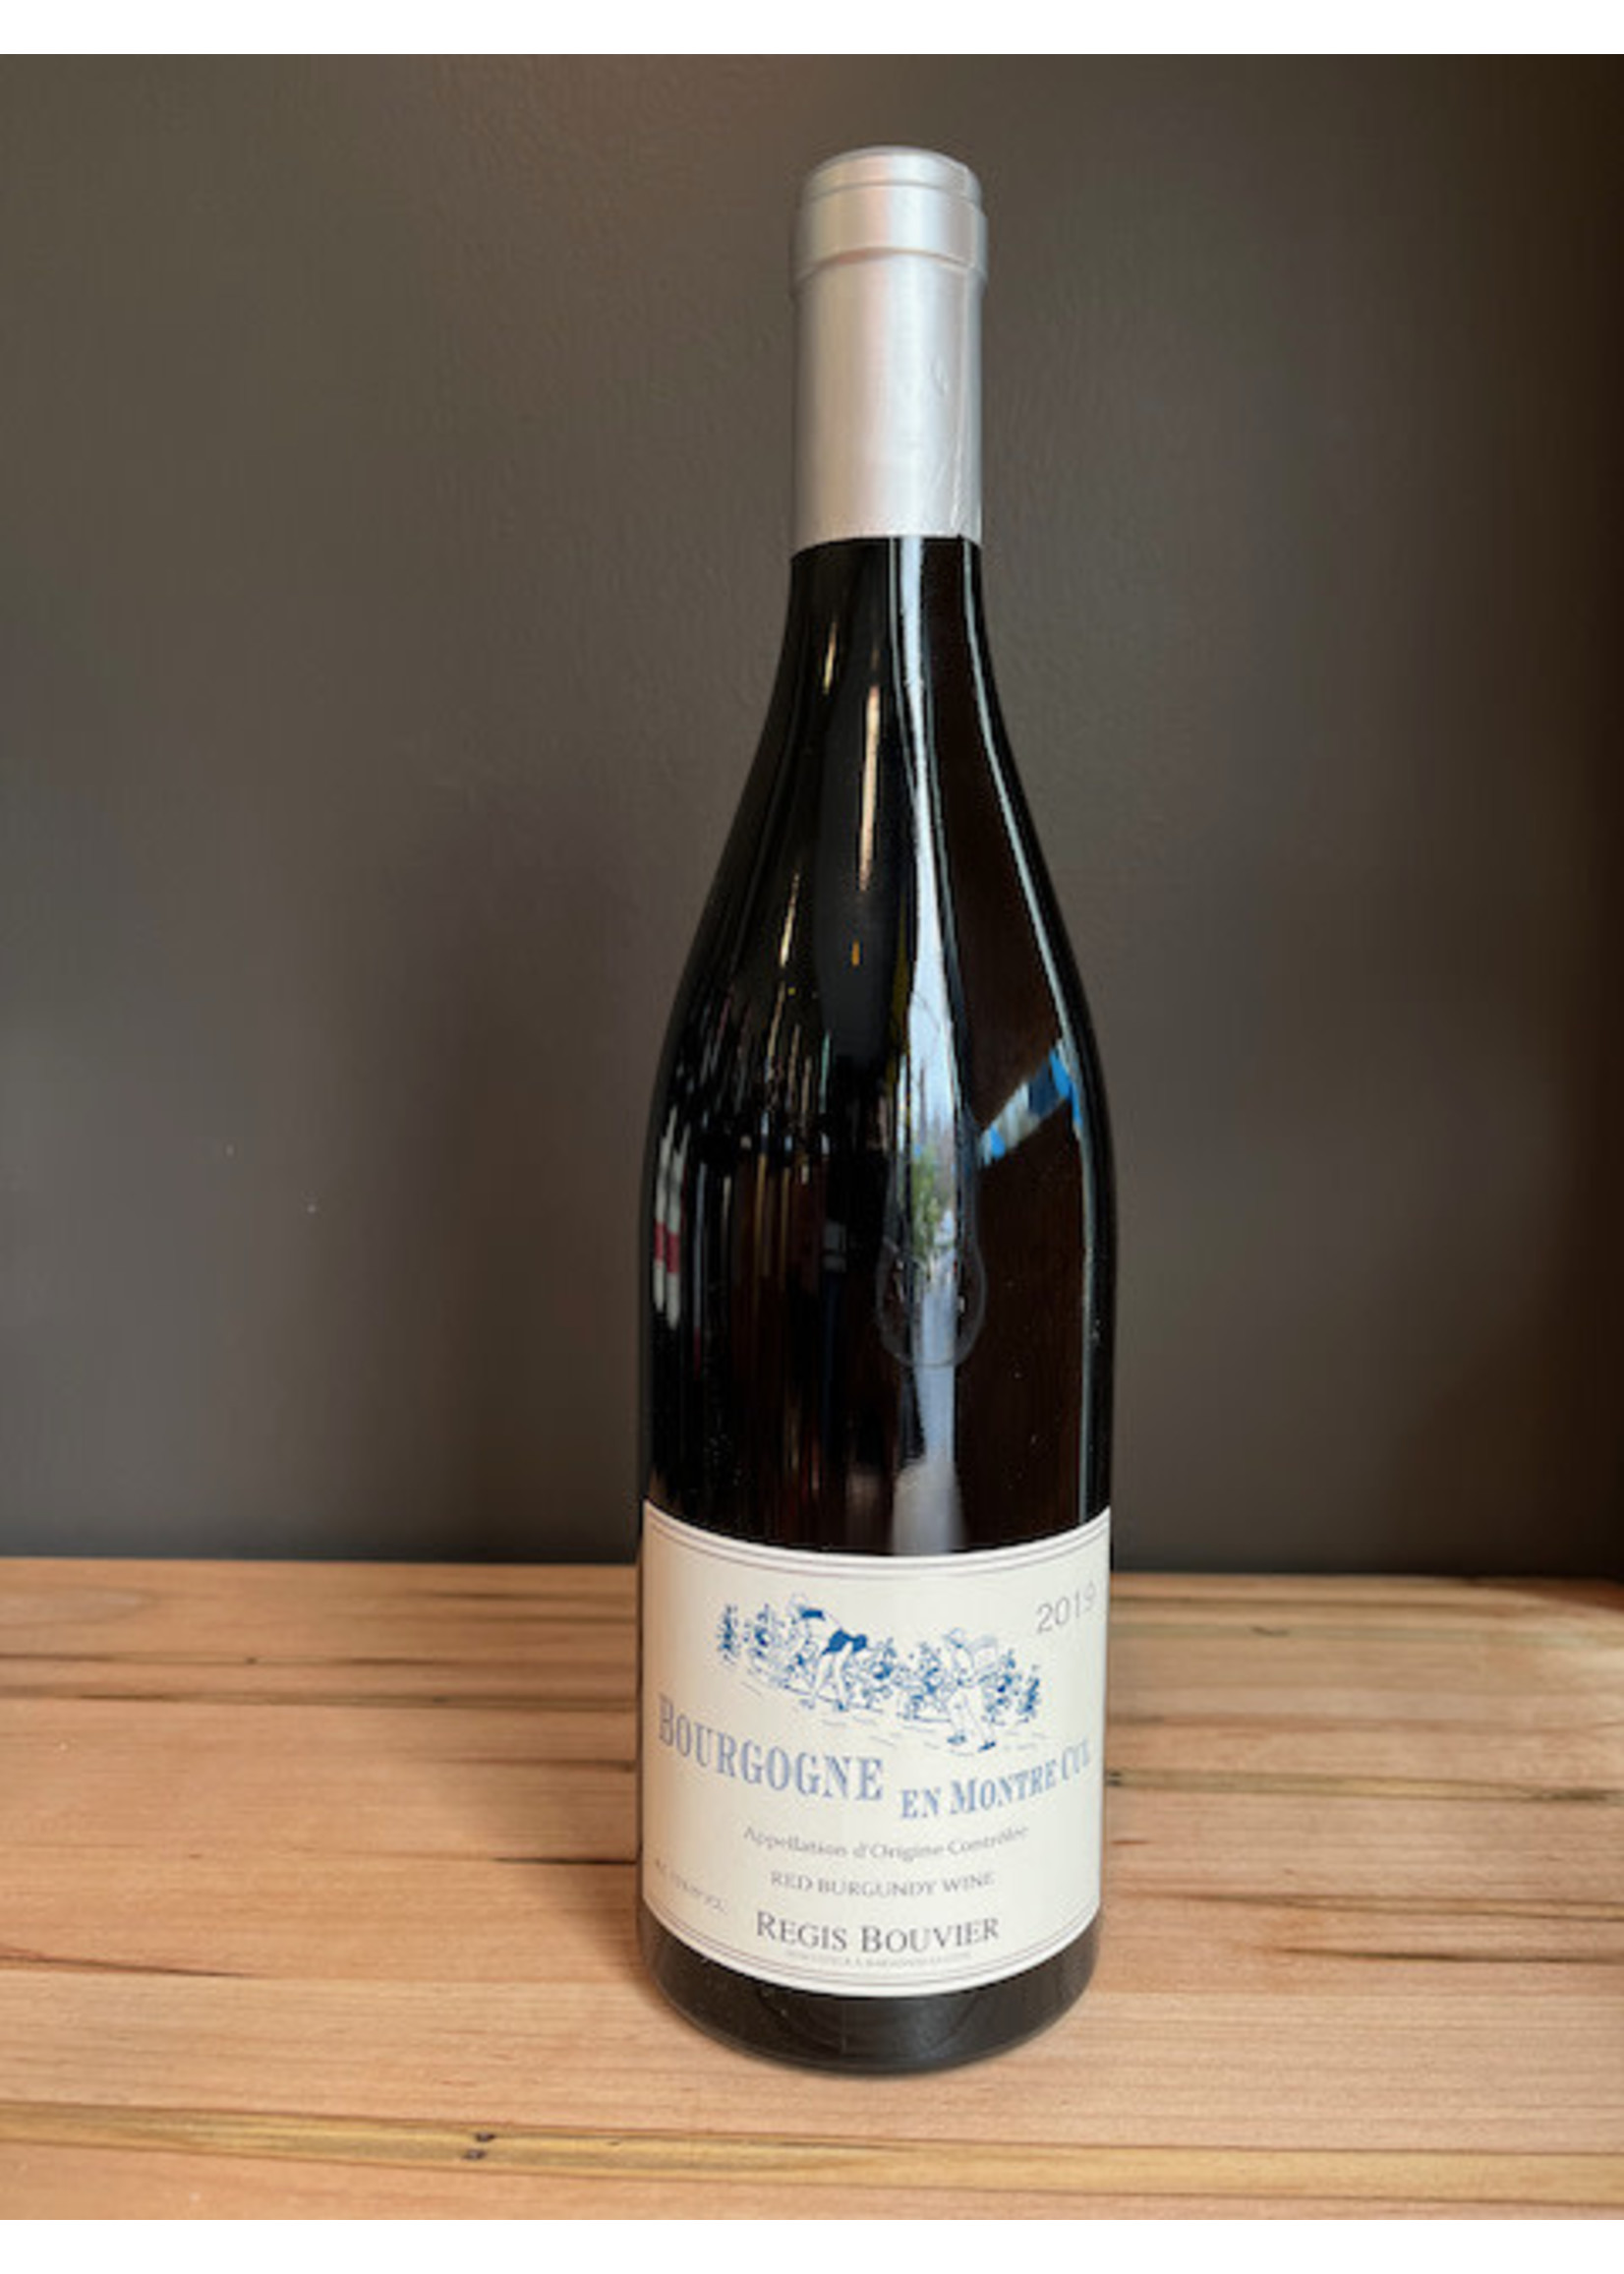 Kermit Lynch Wines Bouvier - Bourgogne “En Montre Cul” 2020